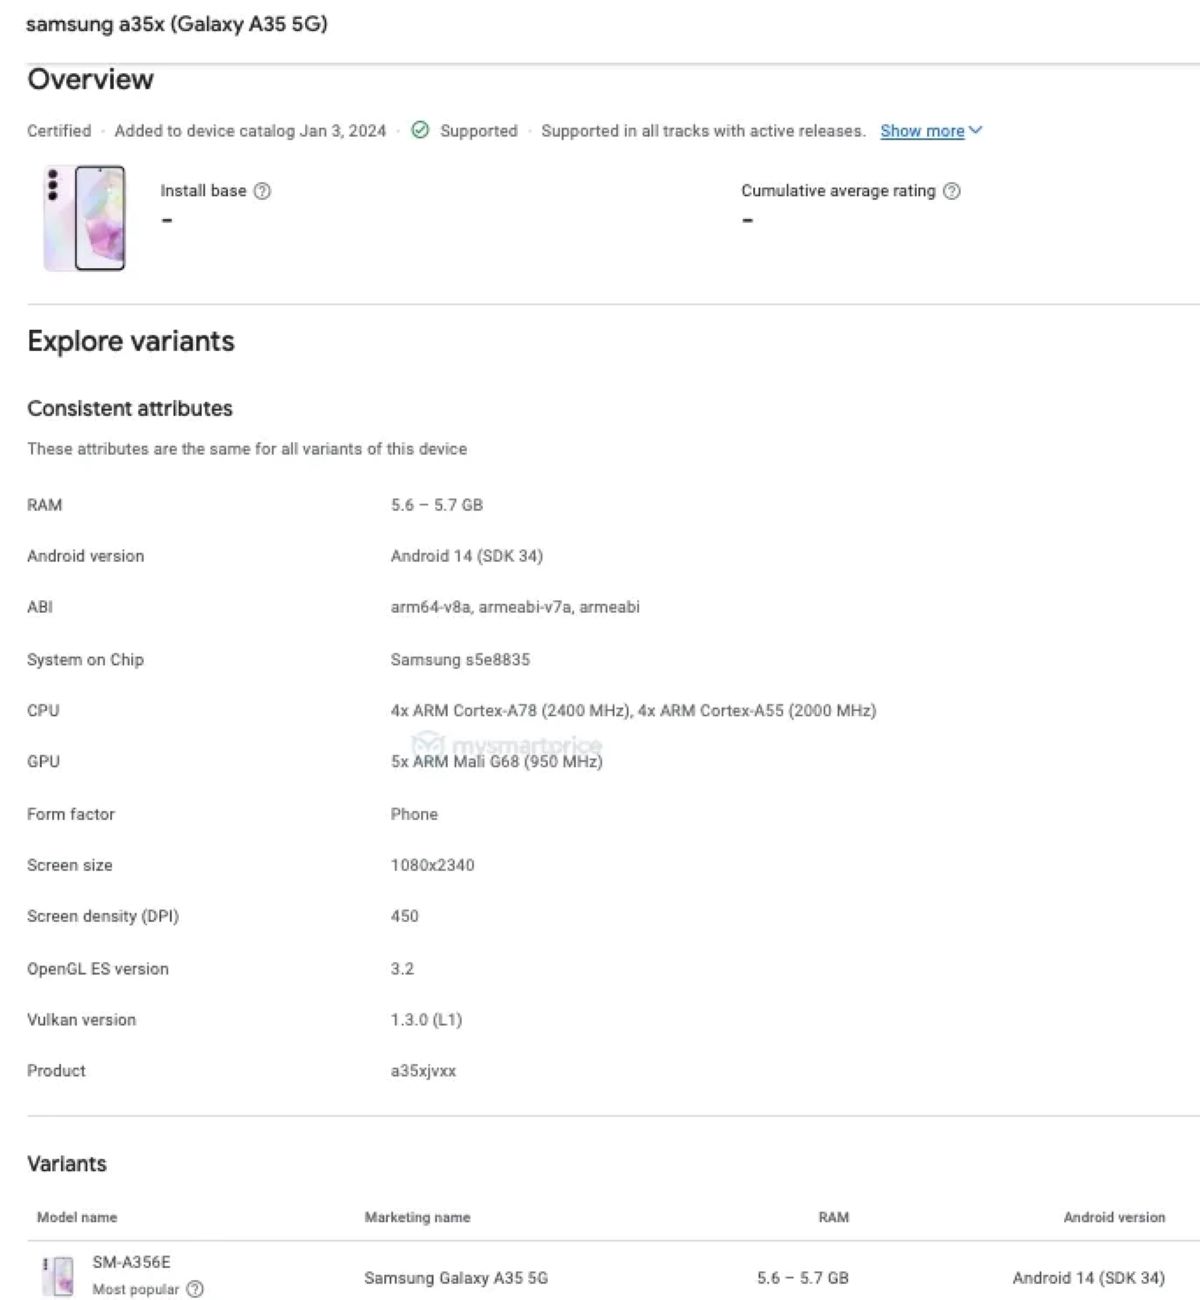 Hé lộ bí mật Galaxy A35: Google Play Console tiết lộ thông tin quan trọng bí mật Galaxy A35 Google Google Play Key Island kỹ thuật Play Console samsung thông số kỹ thuật thông tin